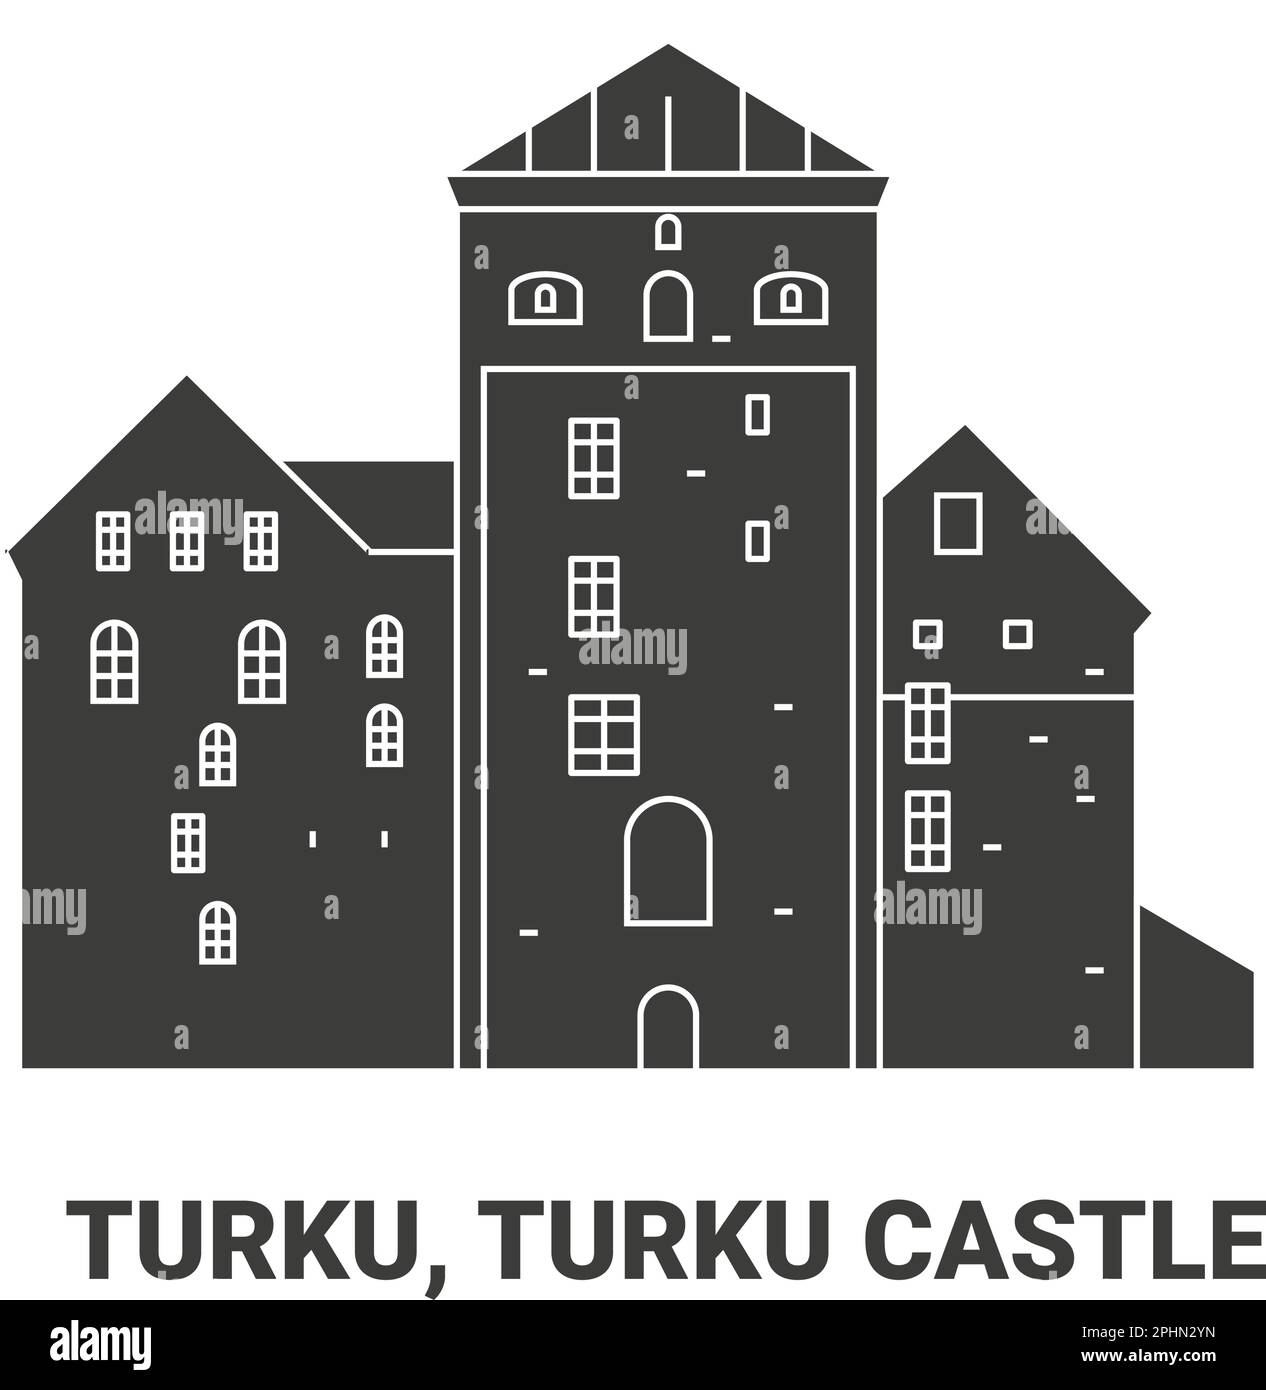 Finlande, Turku, château de Turku, illustration vectorielle de voyage Illustration de Vecteur